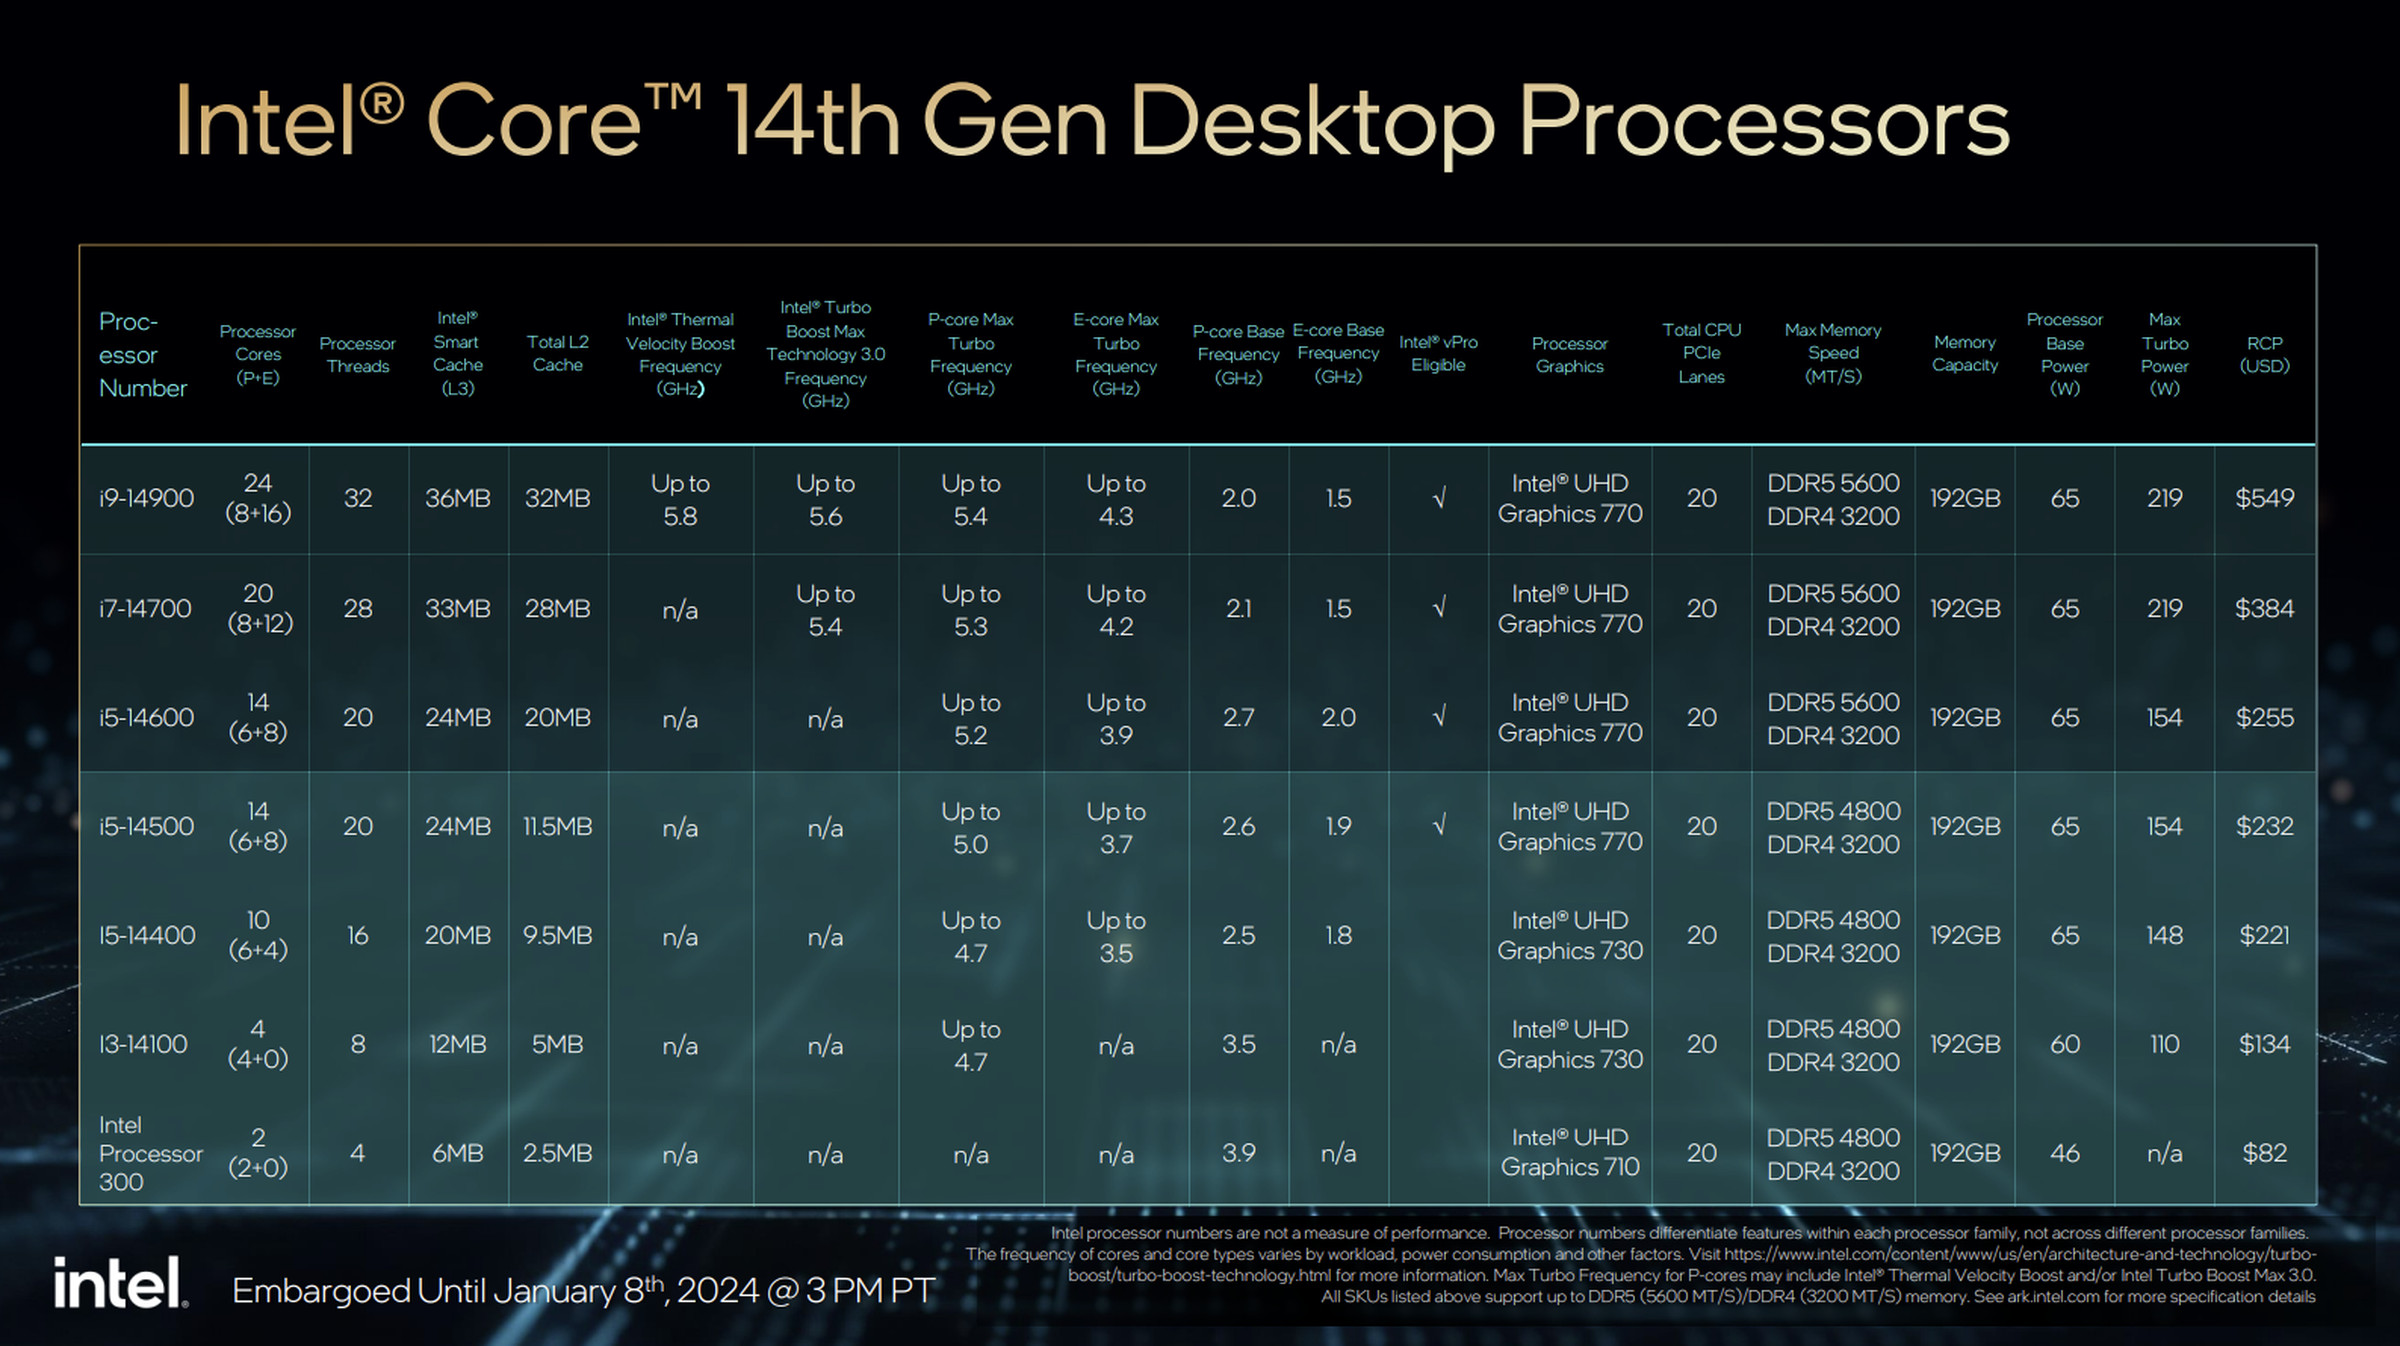 The 14th Gen mainstream CPUs.